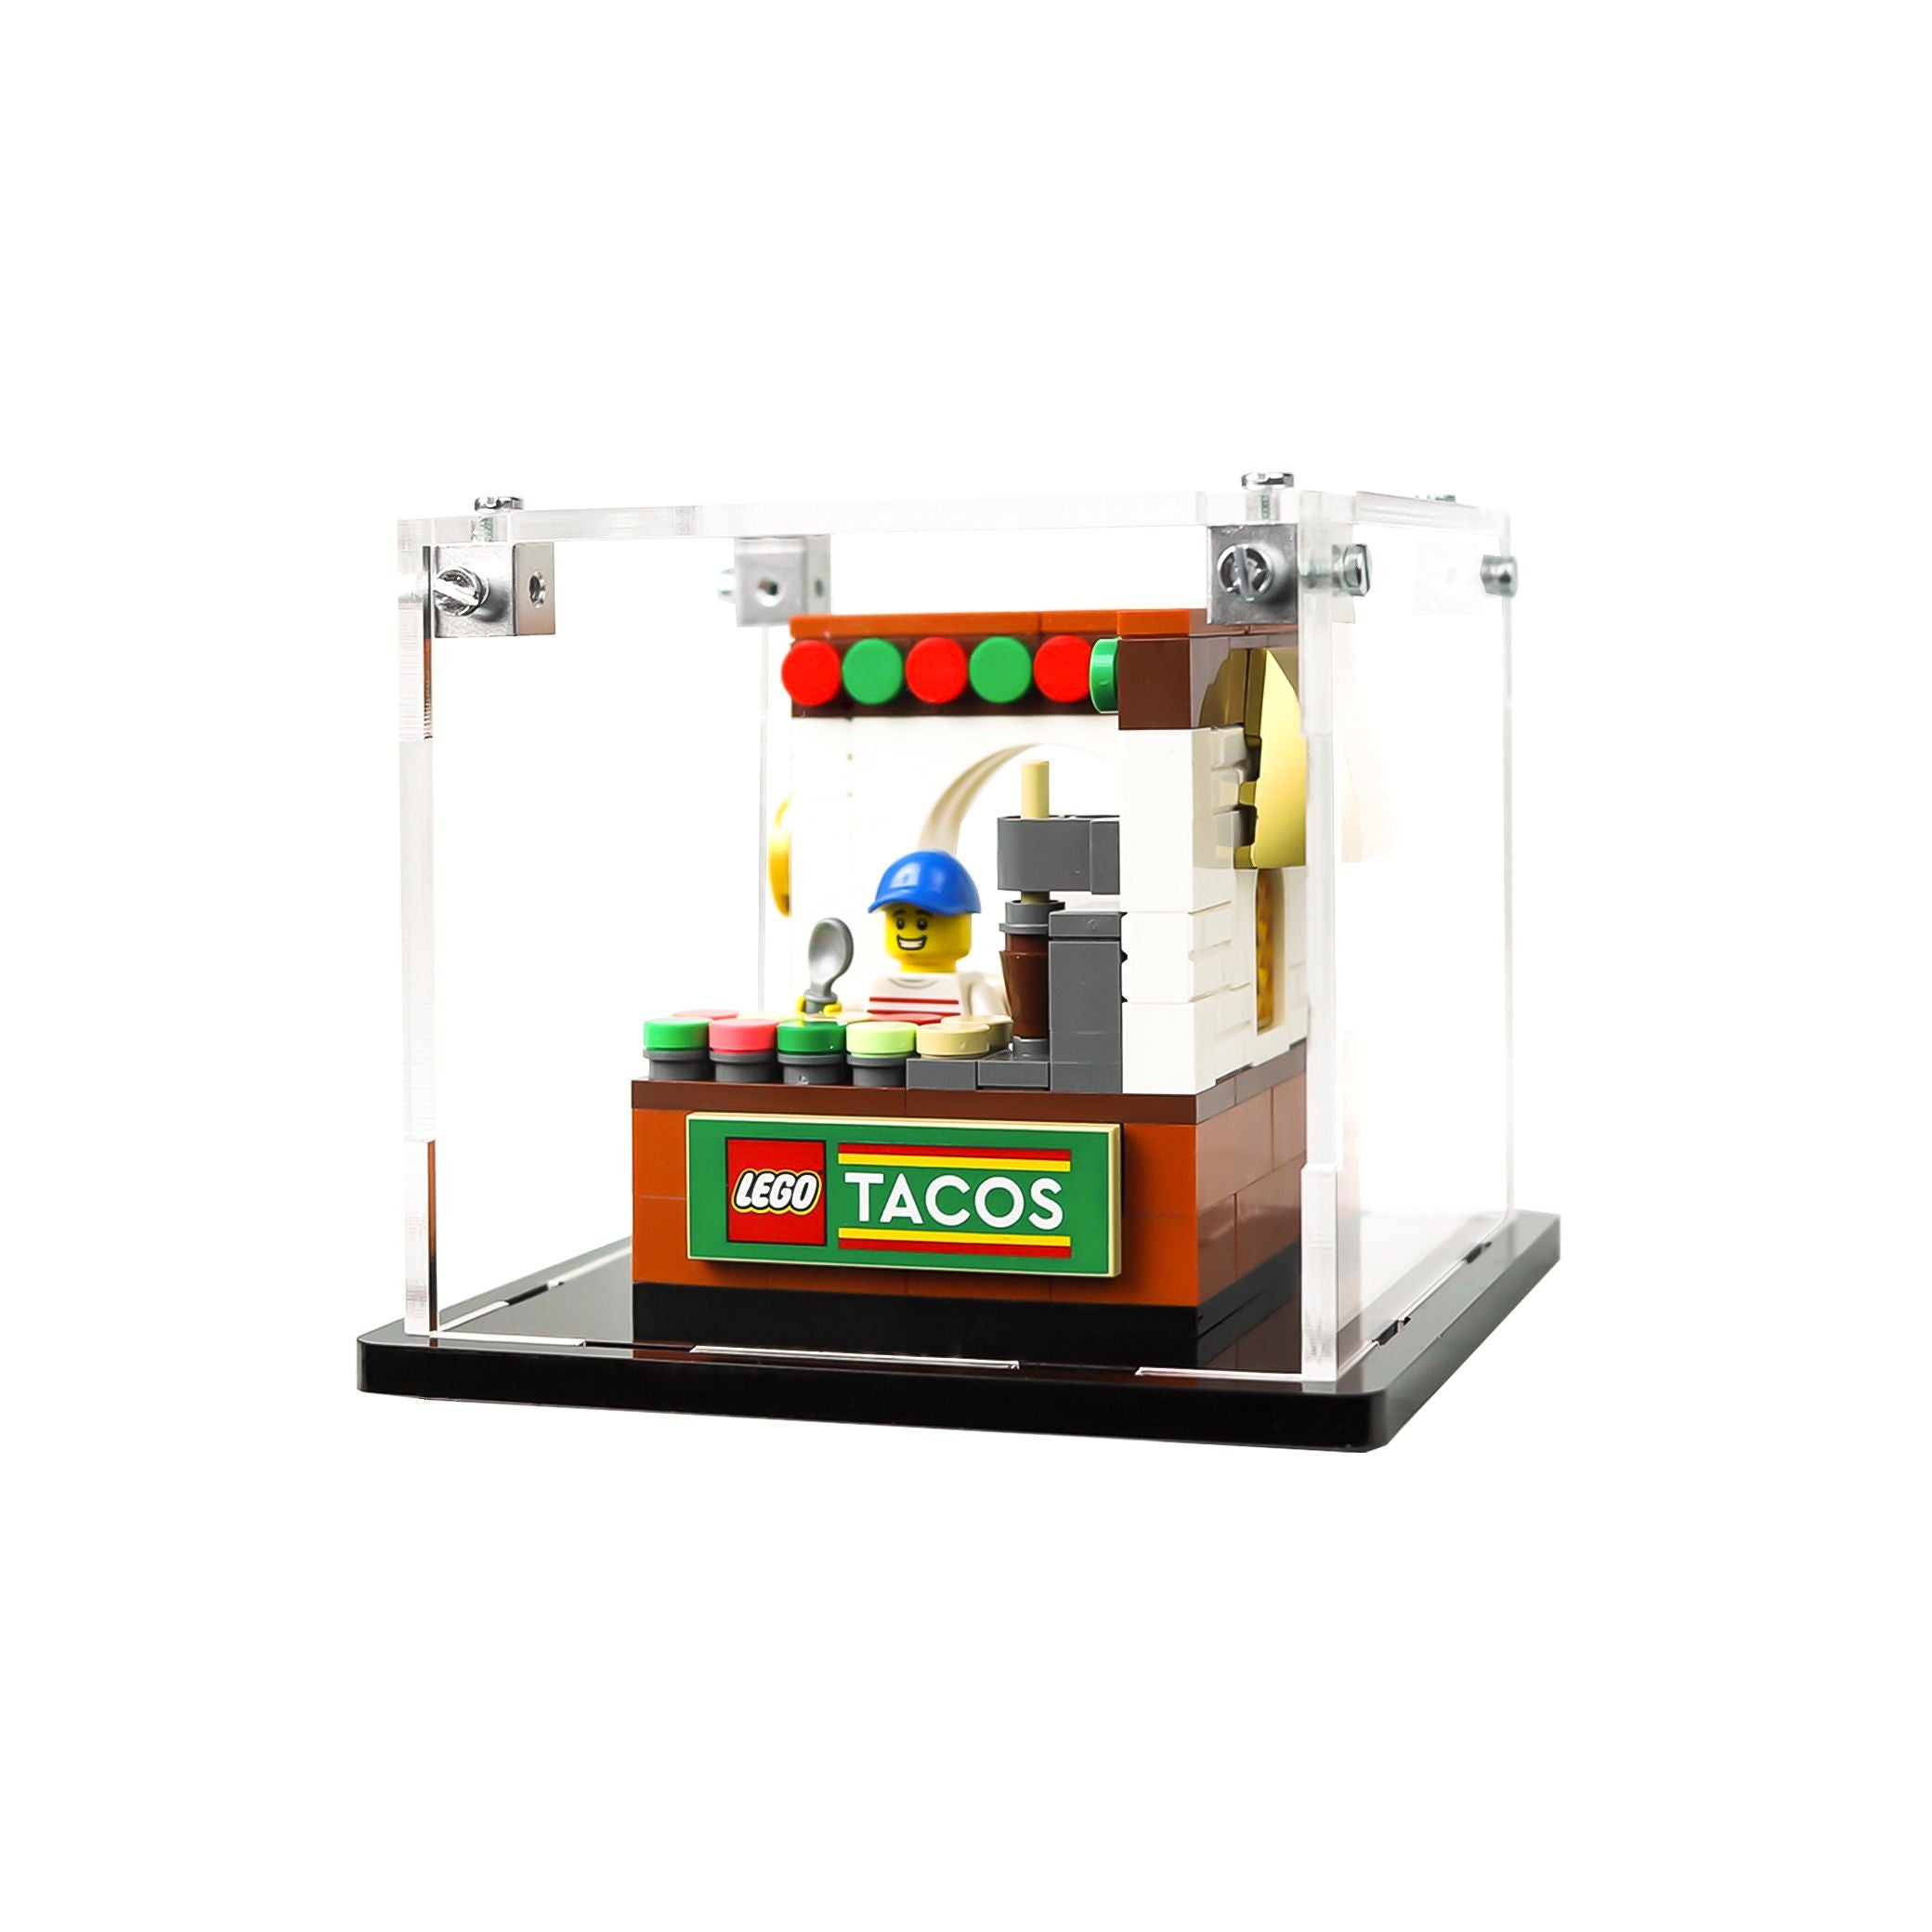 Protector para Taco Stand (6469488)-acrilico-exhibidor-caja-case-Decolecto